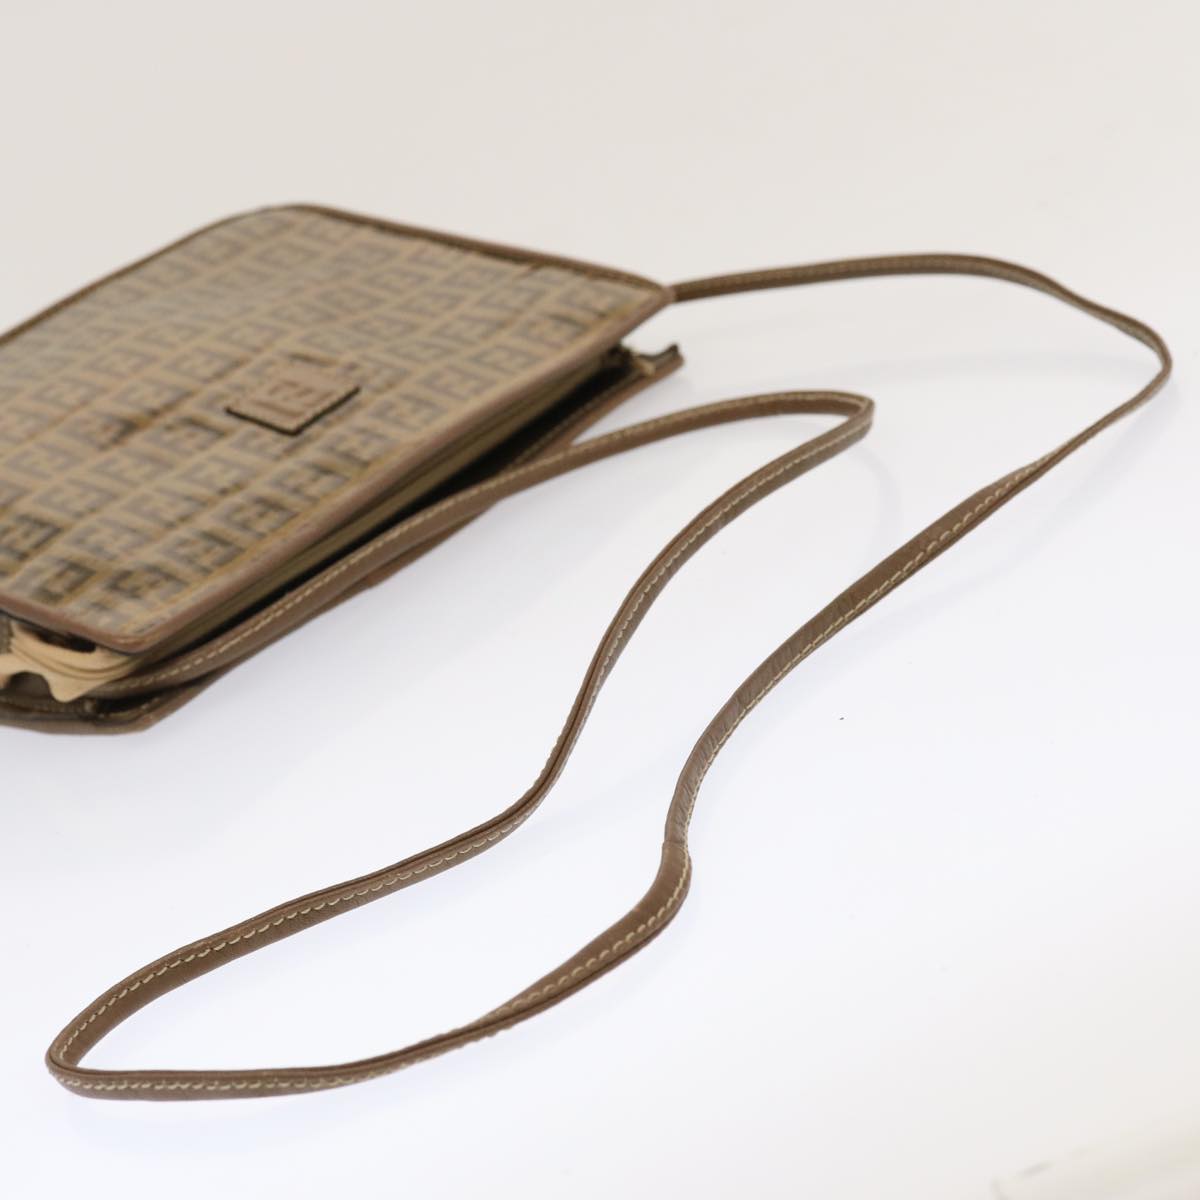 FENDI Zucchino Canvas Shoulder Bag Vintage Brown Auth ep3991